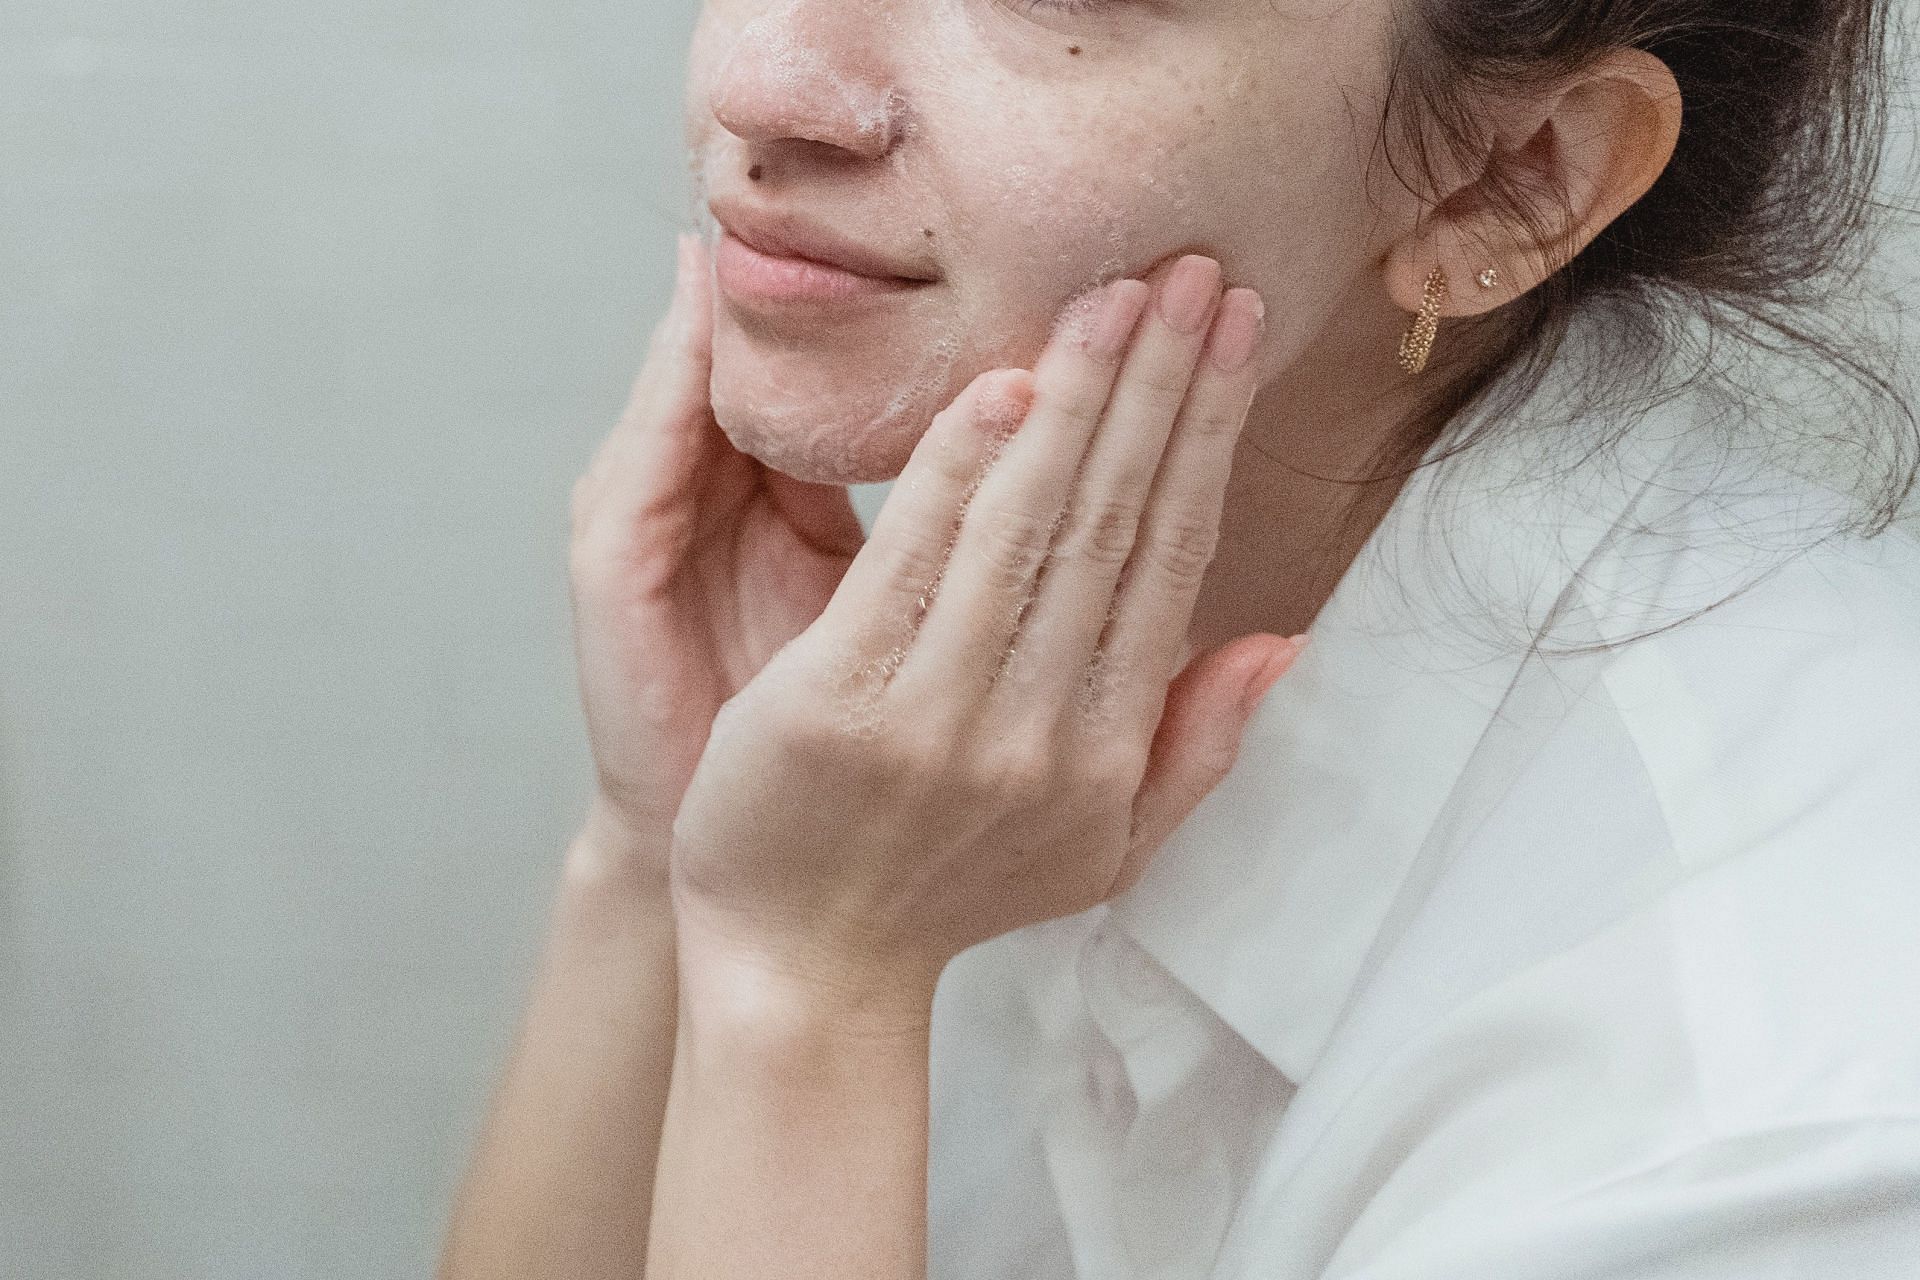 Homemade face scrub (Image via Pexels/Miriam Alonso)